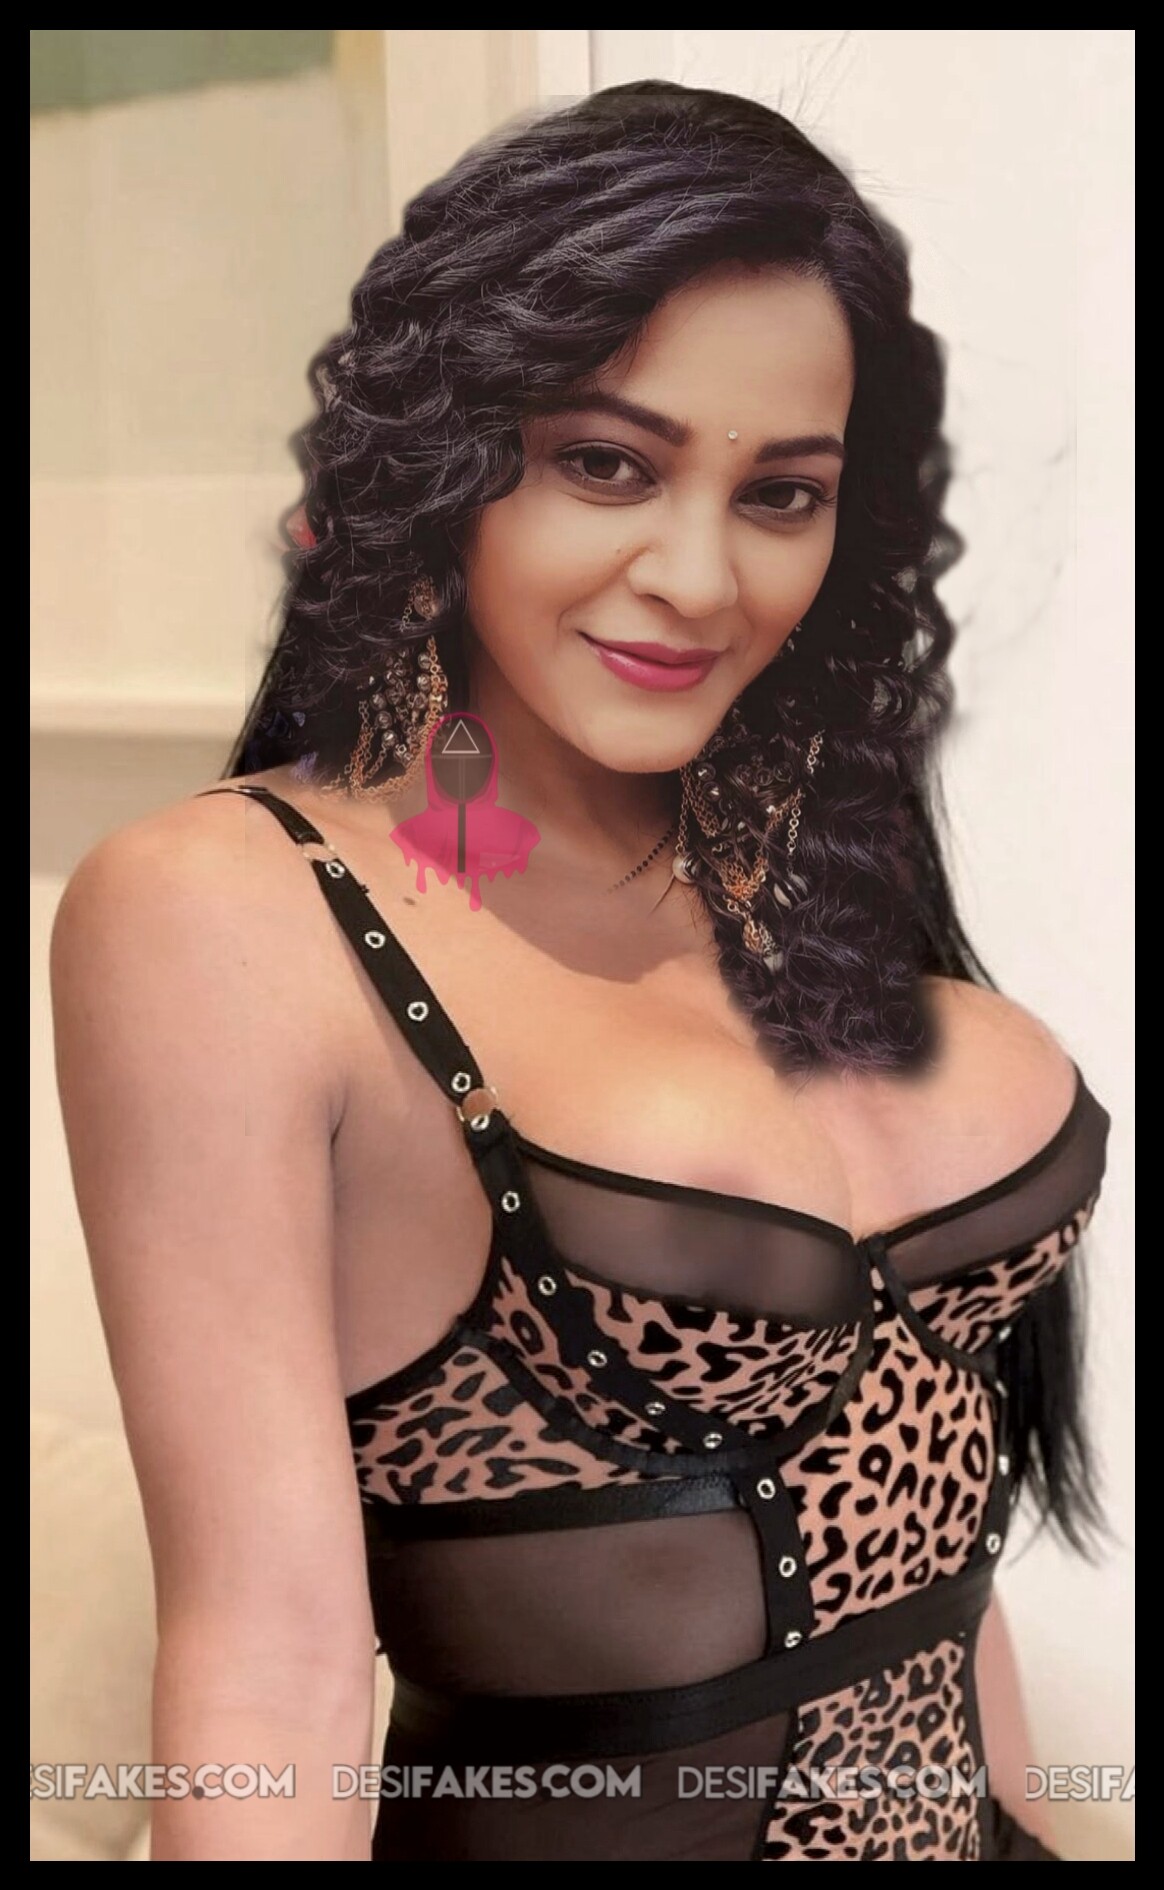 Kaveri Sex Video - Kaveri Priyam nude sex photos (TV Serial Actress) - Bollywood Actress - |  Desifakes.com